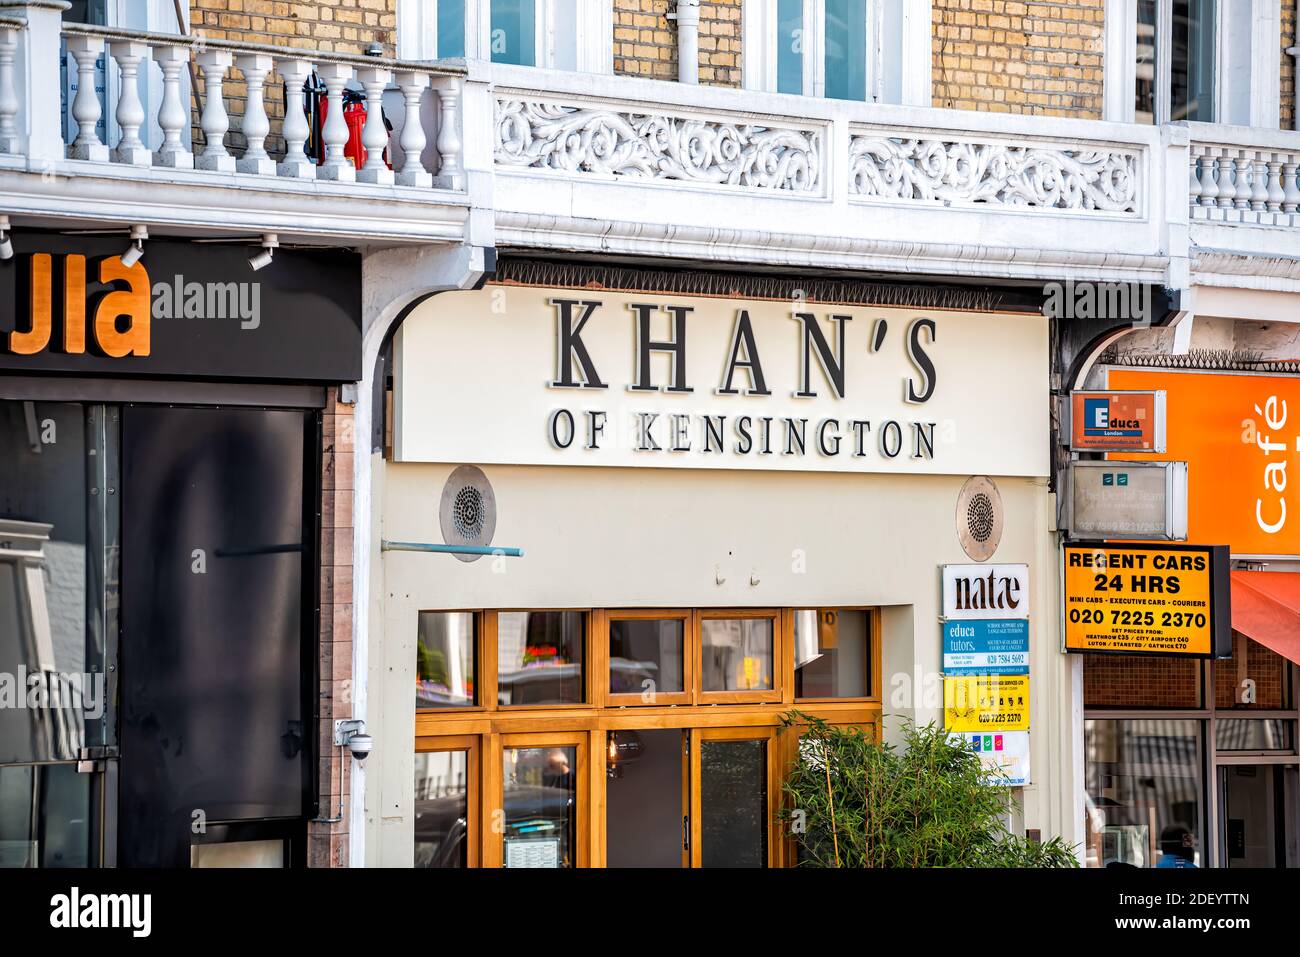 Londra, Regno Unito - 22 giugno 2018: Edificio architettonico con cartello per il negozio Khan's di Kensington, edificio di ingresso sulla strada nel centro della città Foto Stock